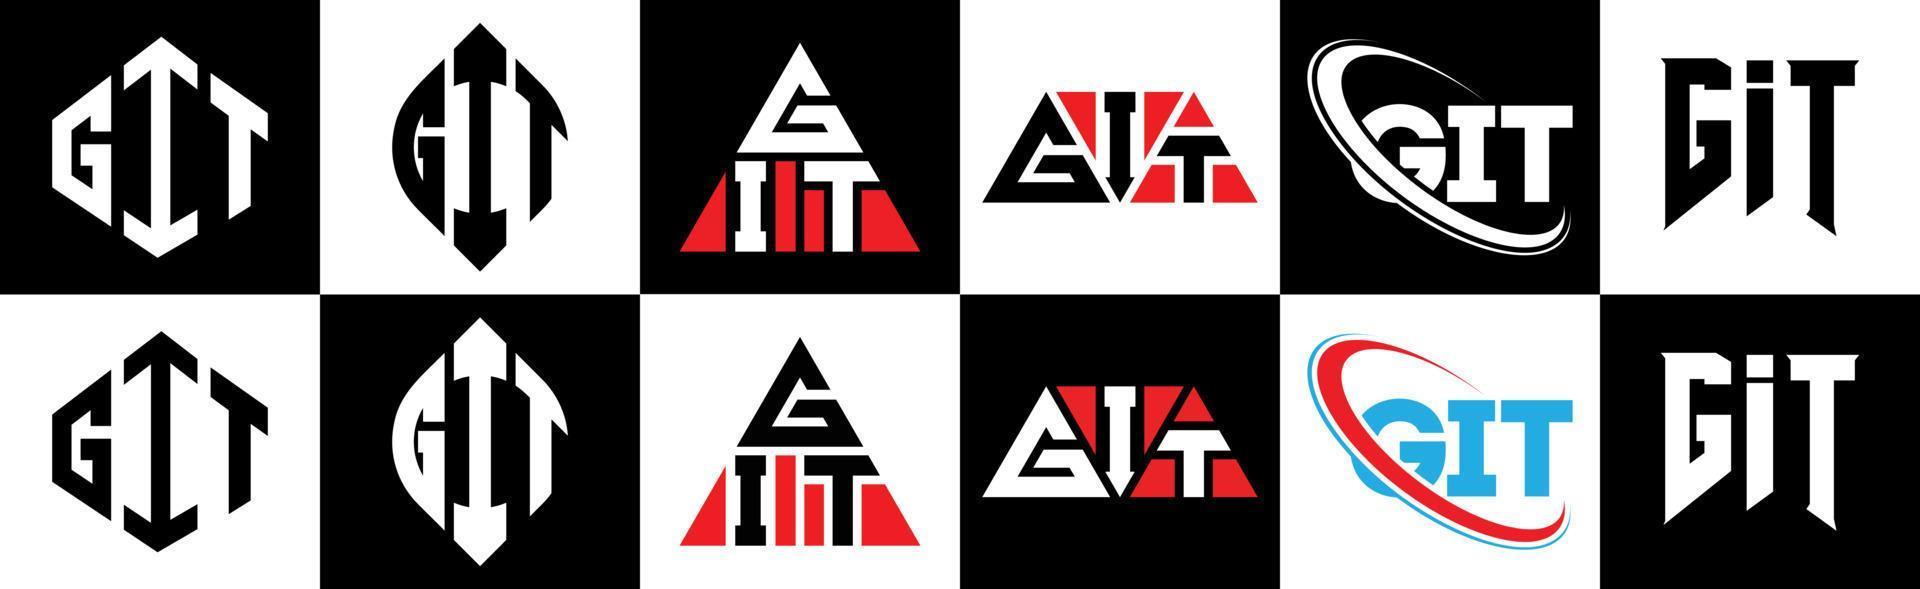 Git-Buchstaben-Logo-Design in sechs Stilen. git polygon, kreis, dreieck, sechseck, flacher und einfacher stil mit schwarz-weißem buchstabenlogo in einer zeichenfläche. Git minimalistisches und klassisches Logo vektor